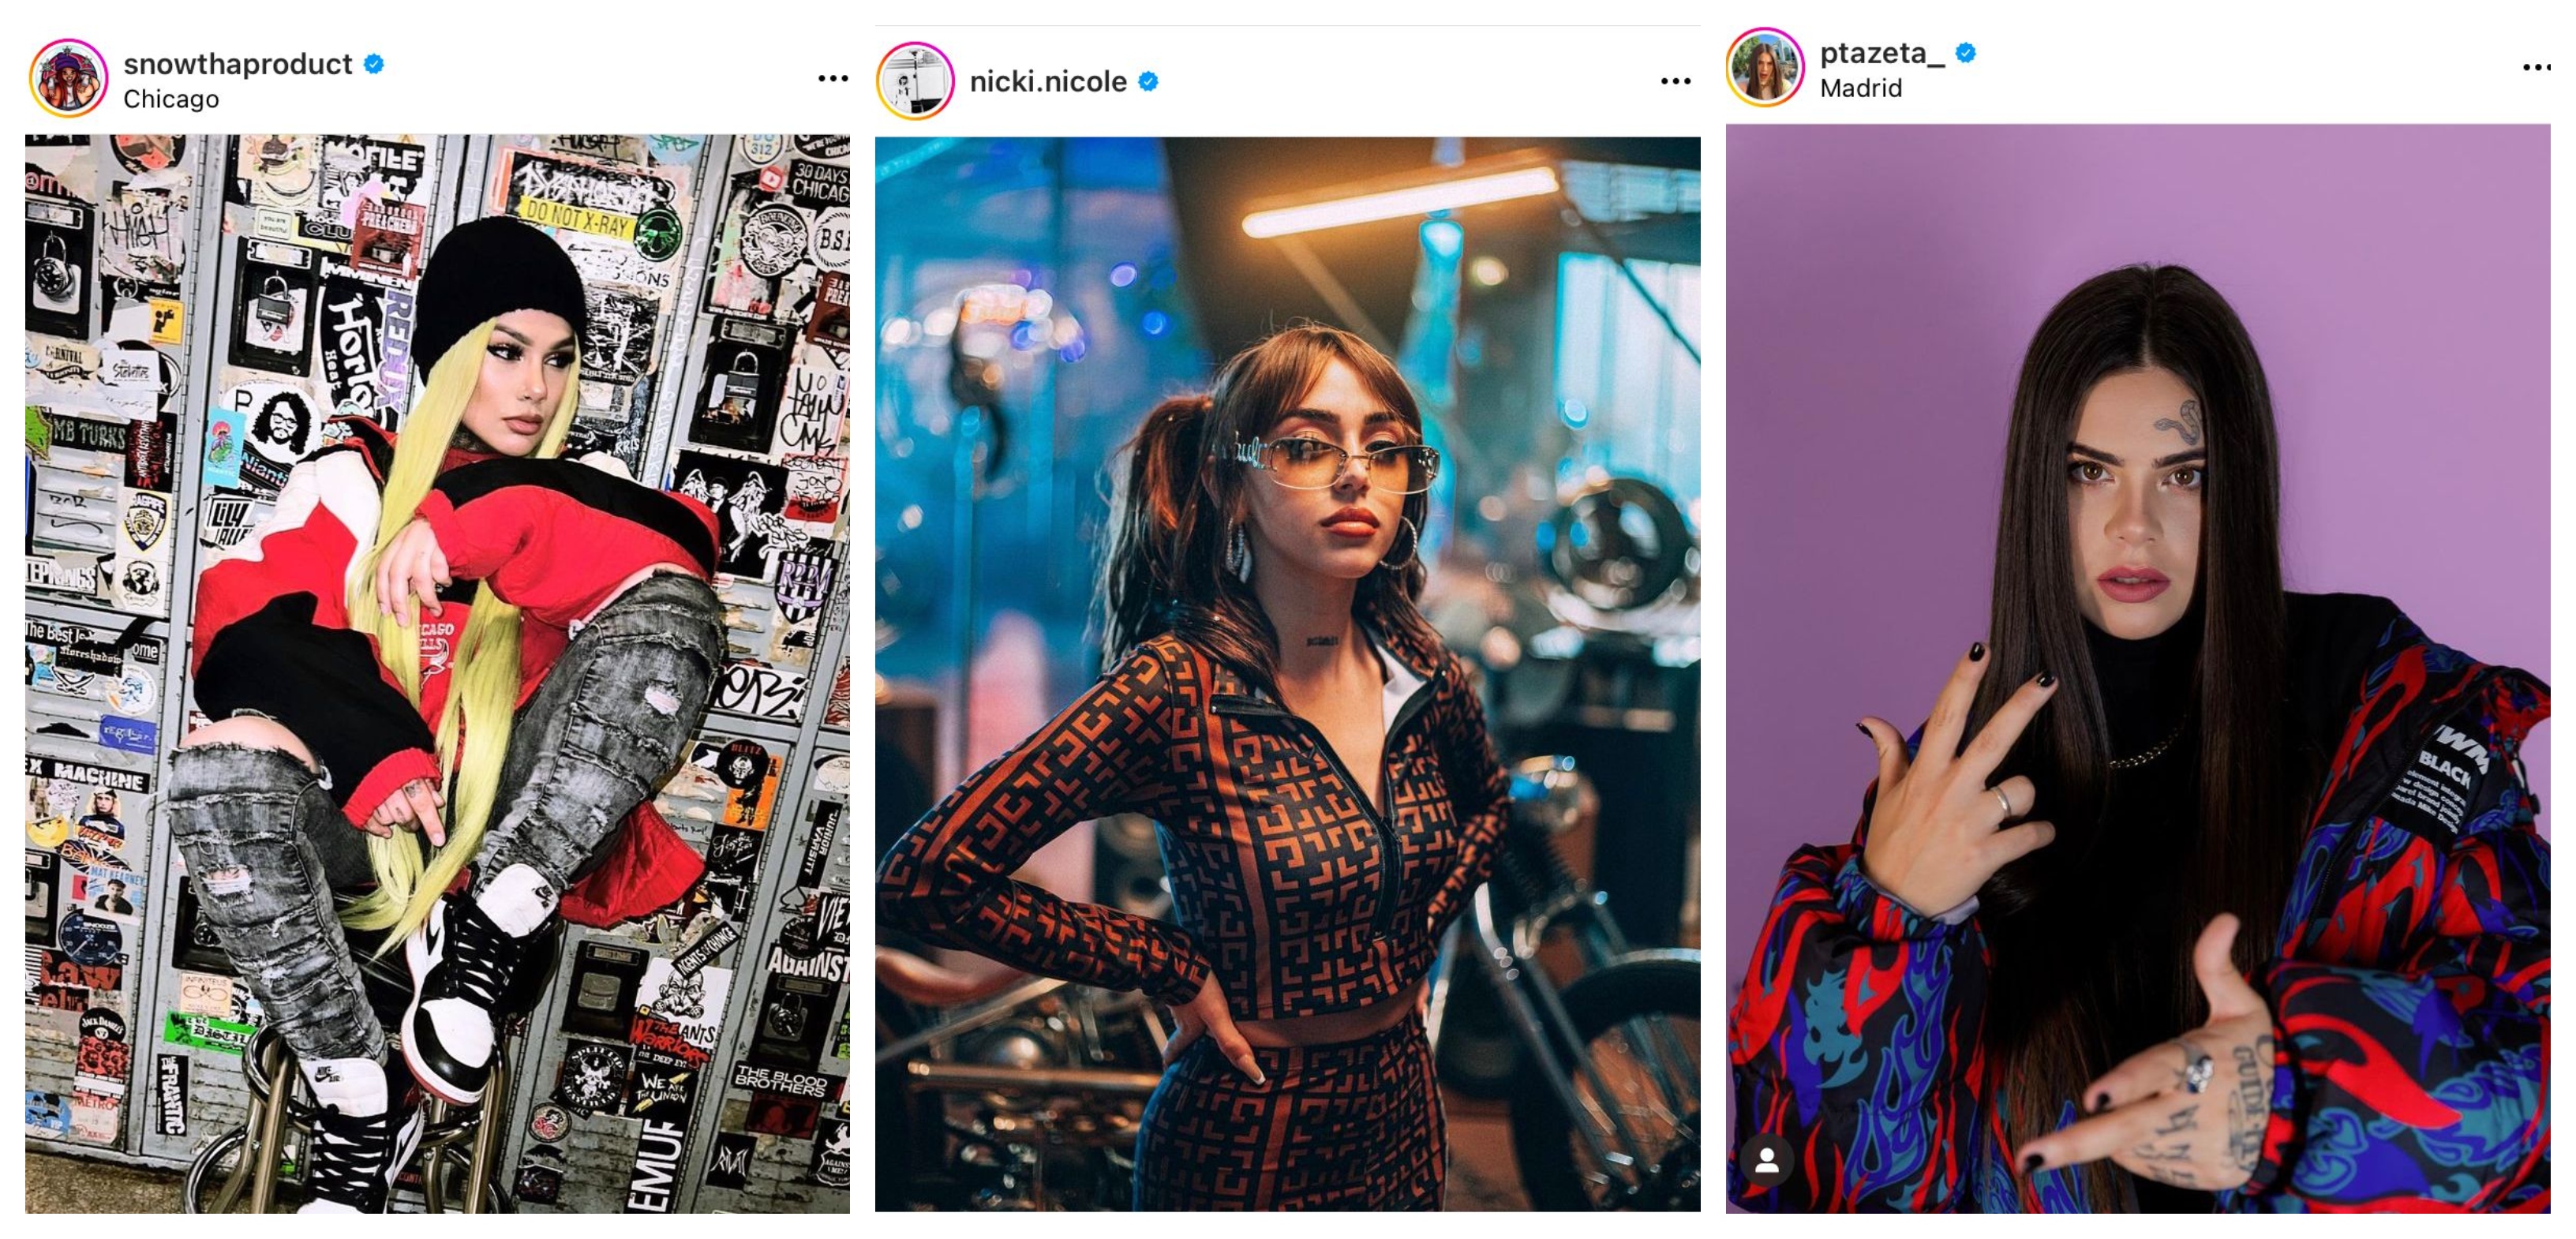 Snow Tha Product, Nicki Nicole y Ptzaeta se han convertido en la cara femenina del rap latino (Fotos: Instagram / @snowthaproduct / @nicki.nicole / @ptazeta_)